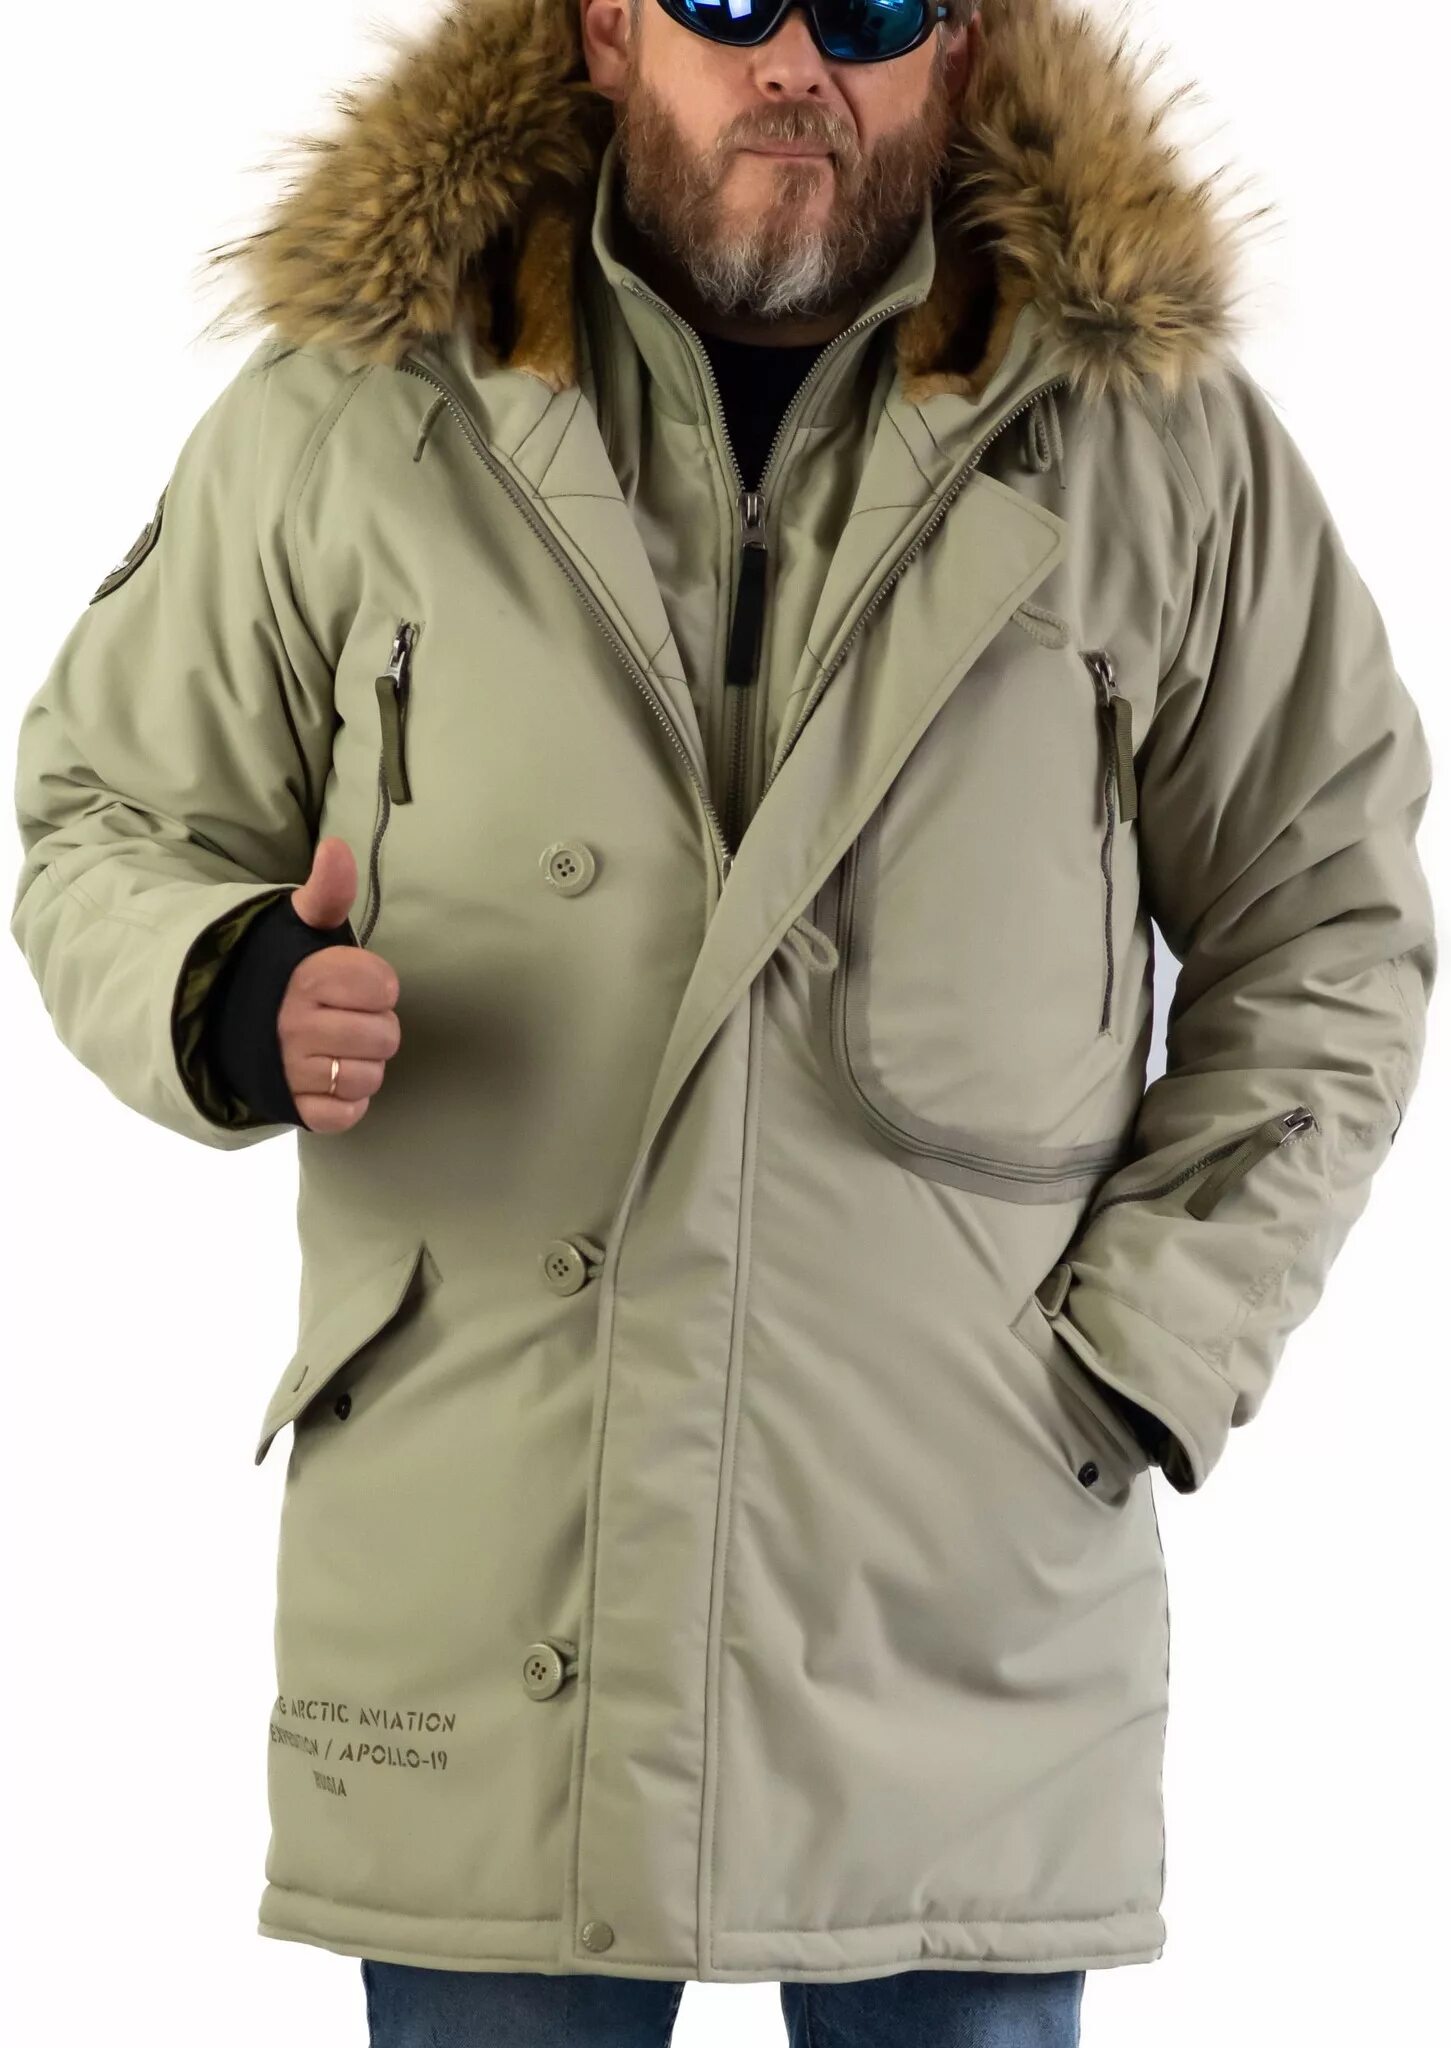 Куртка Аляска Apolloget мужская. Apolloget Expedition Silver Green/Olive. Куртка Аляска апологет Экспедишн. Парка зимняя мужская Аляска Арктик. Аляска тепло